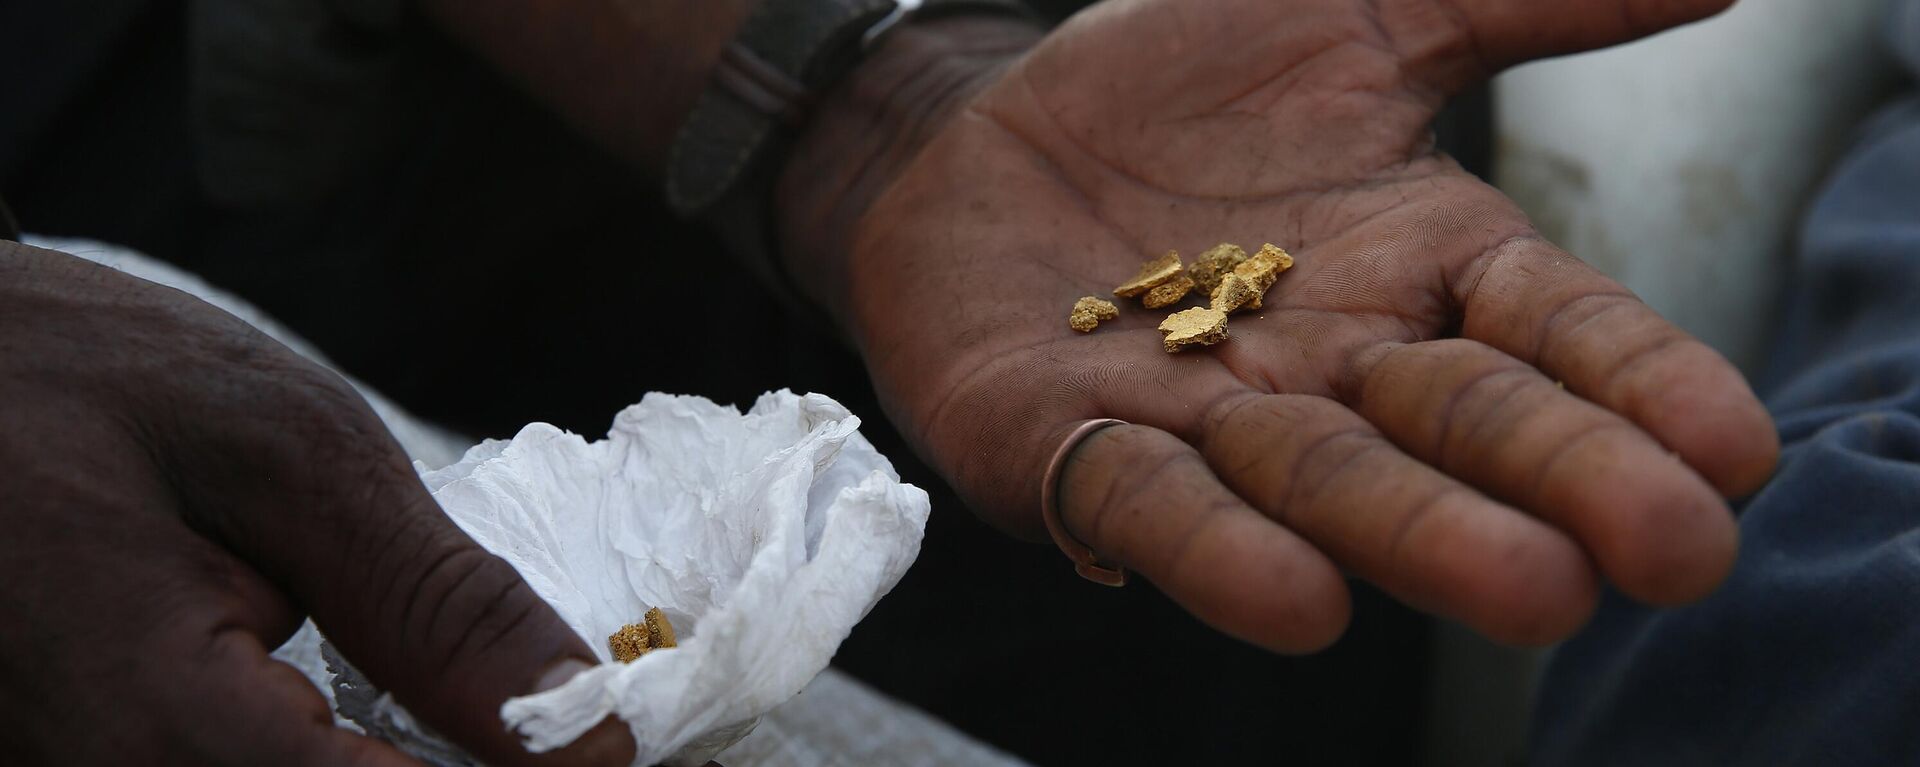 Um garimpeiro mostra ouro que extraiu ilegalmente ao deixar o território indígena Yanomami antes das operações esperadas contra o garimpo ilegal em Alto Alegre, estado de Roraima, Brasil, 7 de fevereiro de 2023 - Sputnik Brasil, 1920, 22.11.2023